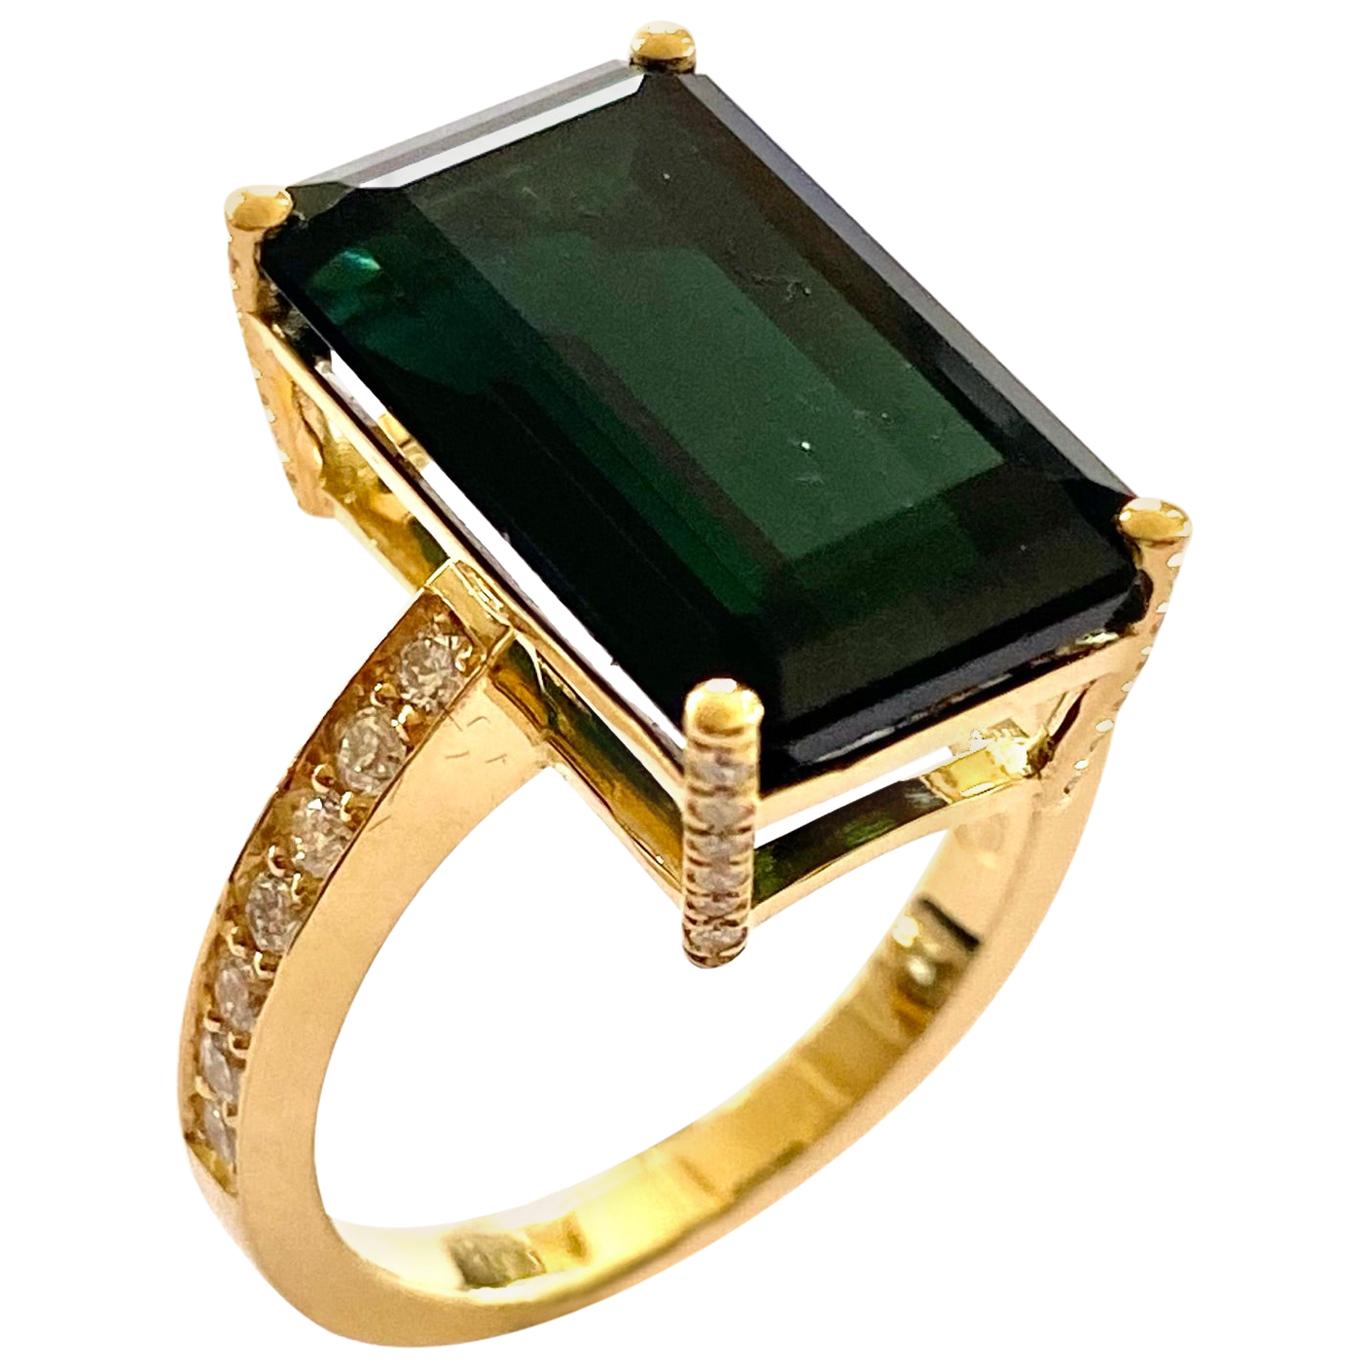 18 Karat Yellow Gold Ring One Natural Green Tourmaline and 38 Diamonds, Handmade